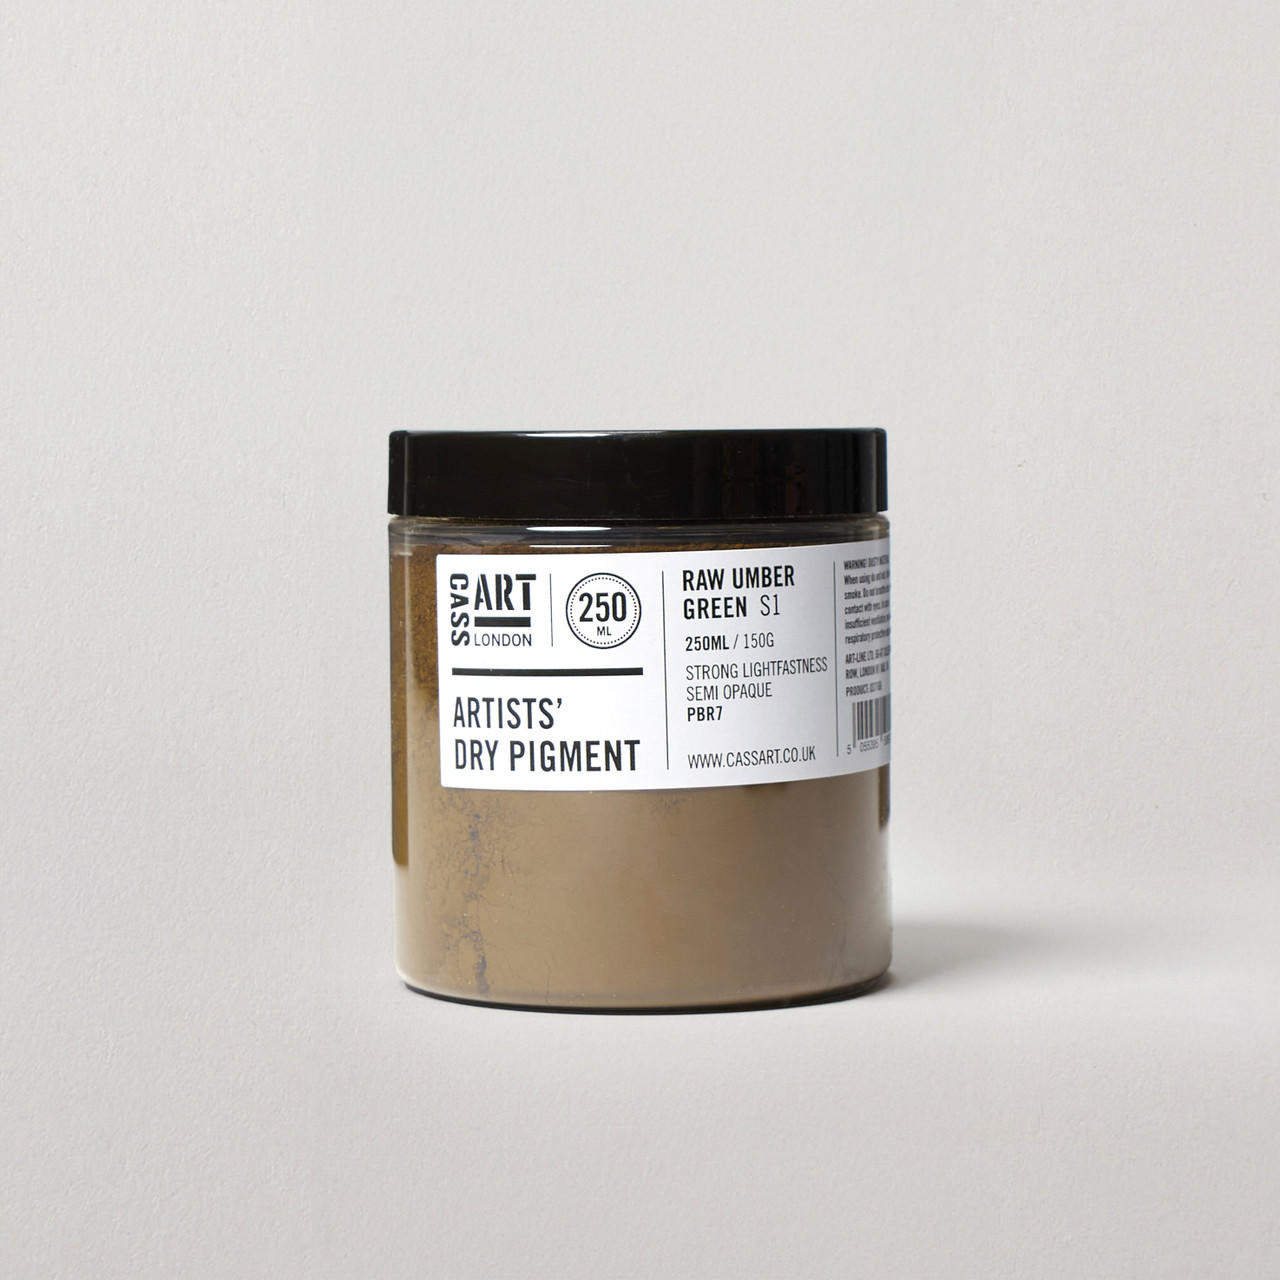 Cass Art Artists’ Dry Pigment 150g / 250ml Raw Umber Green